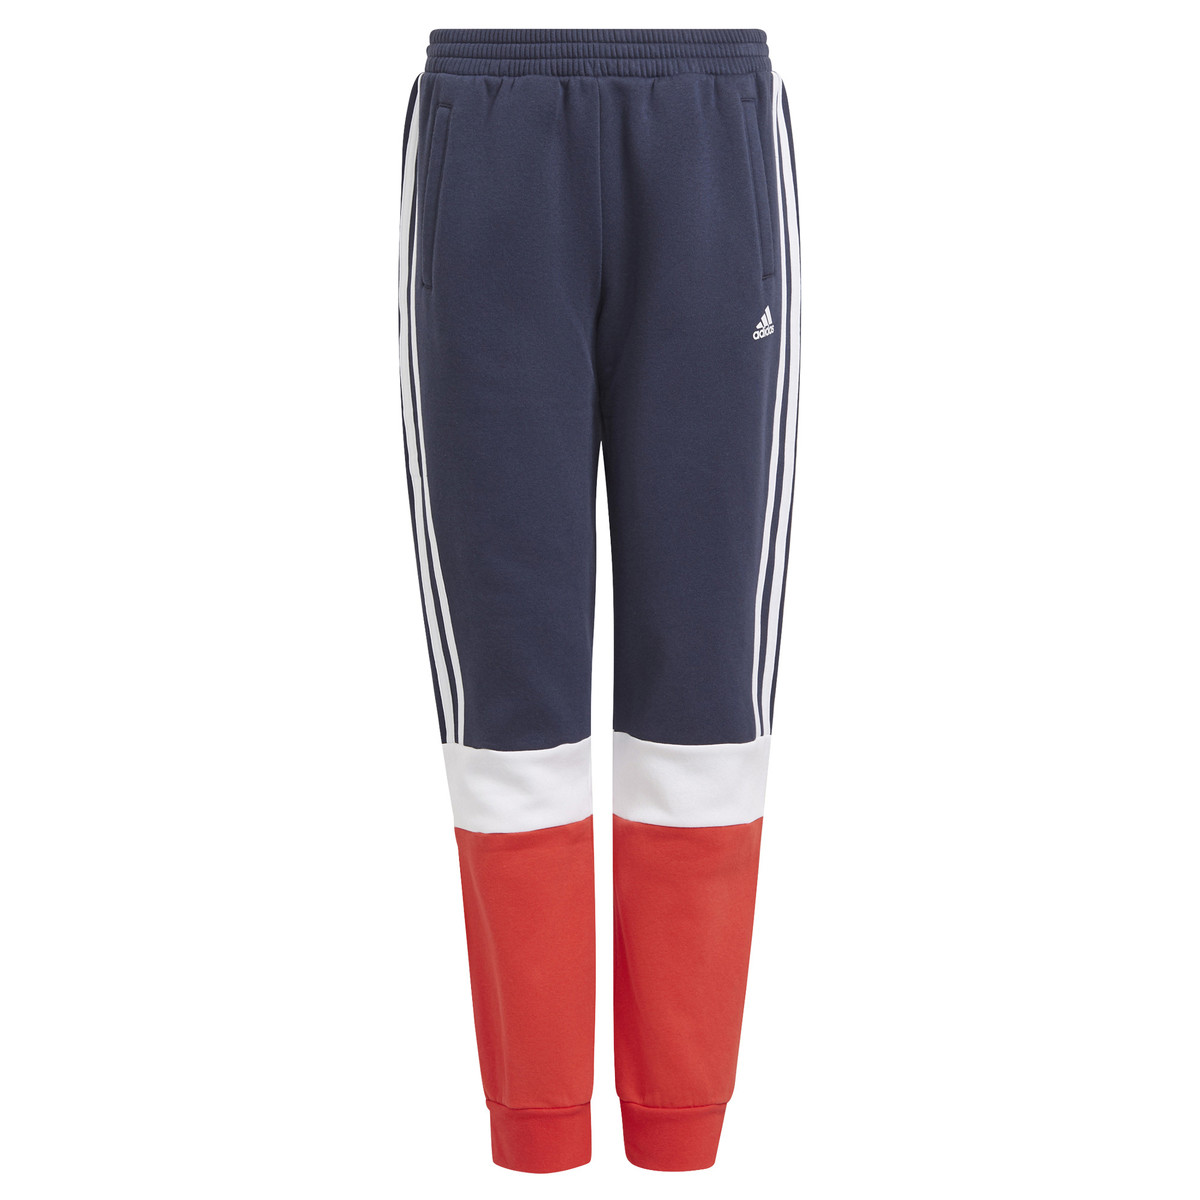 textil Dreng Træningsbukser adidas Performance ALMANA Marineblå / Rød